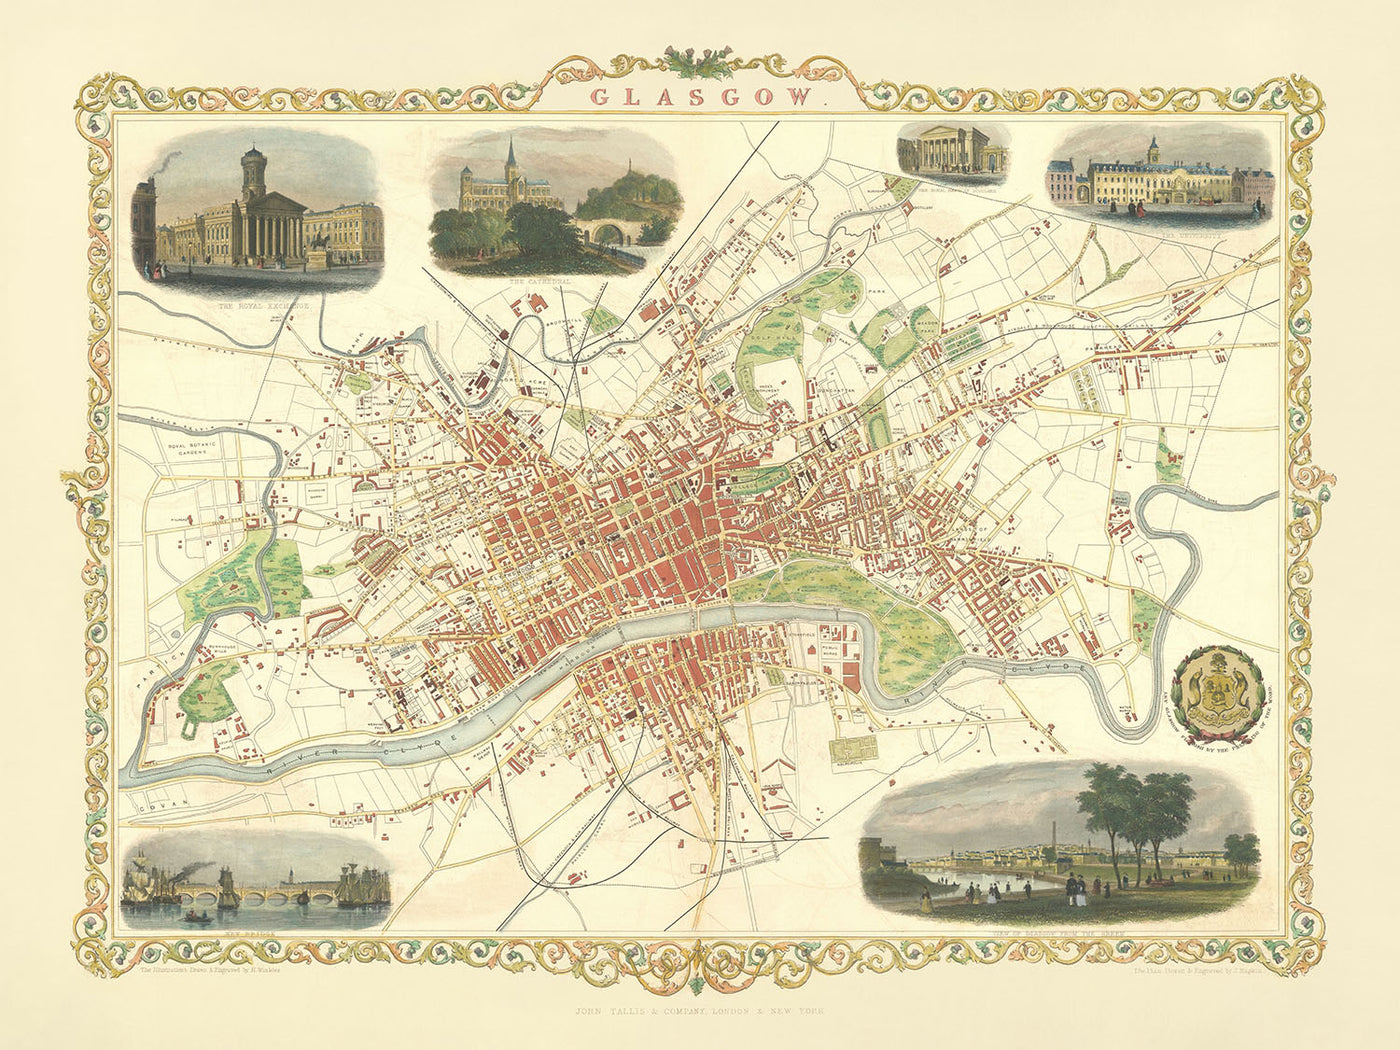 Alte Karte von Glasgow, 1851: Glasgow Royal Exchange, Glasgow University, Glasgow Necropolis, River Clyde, Glasgow Green